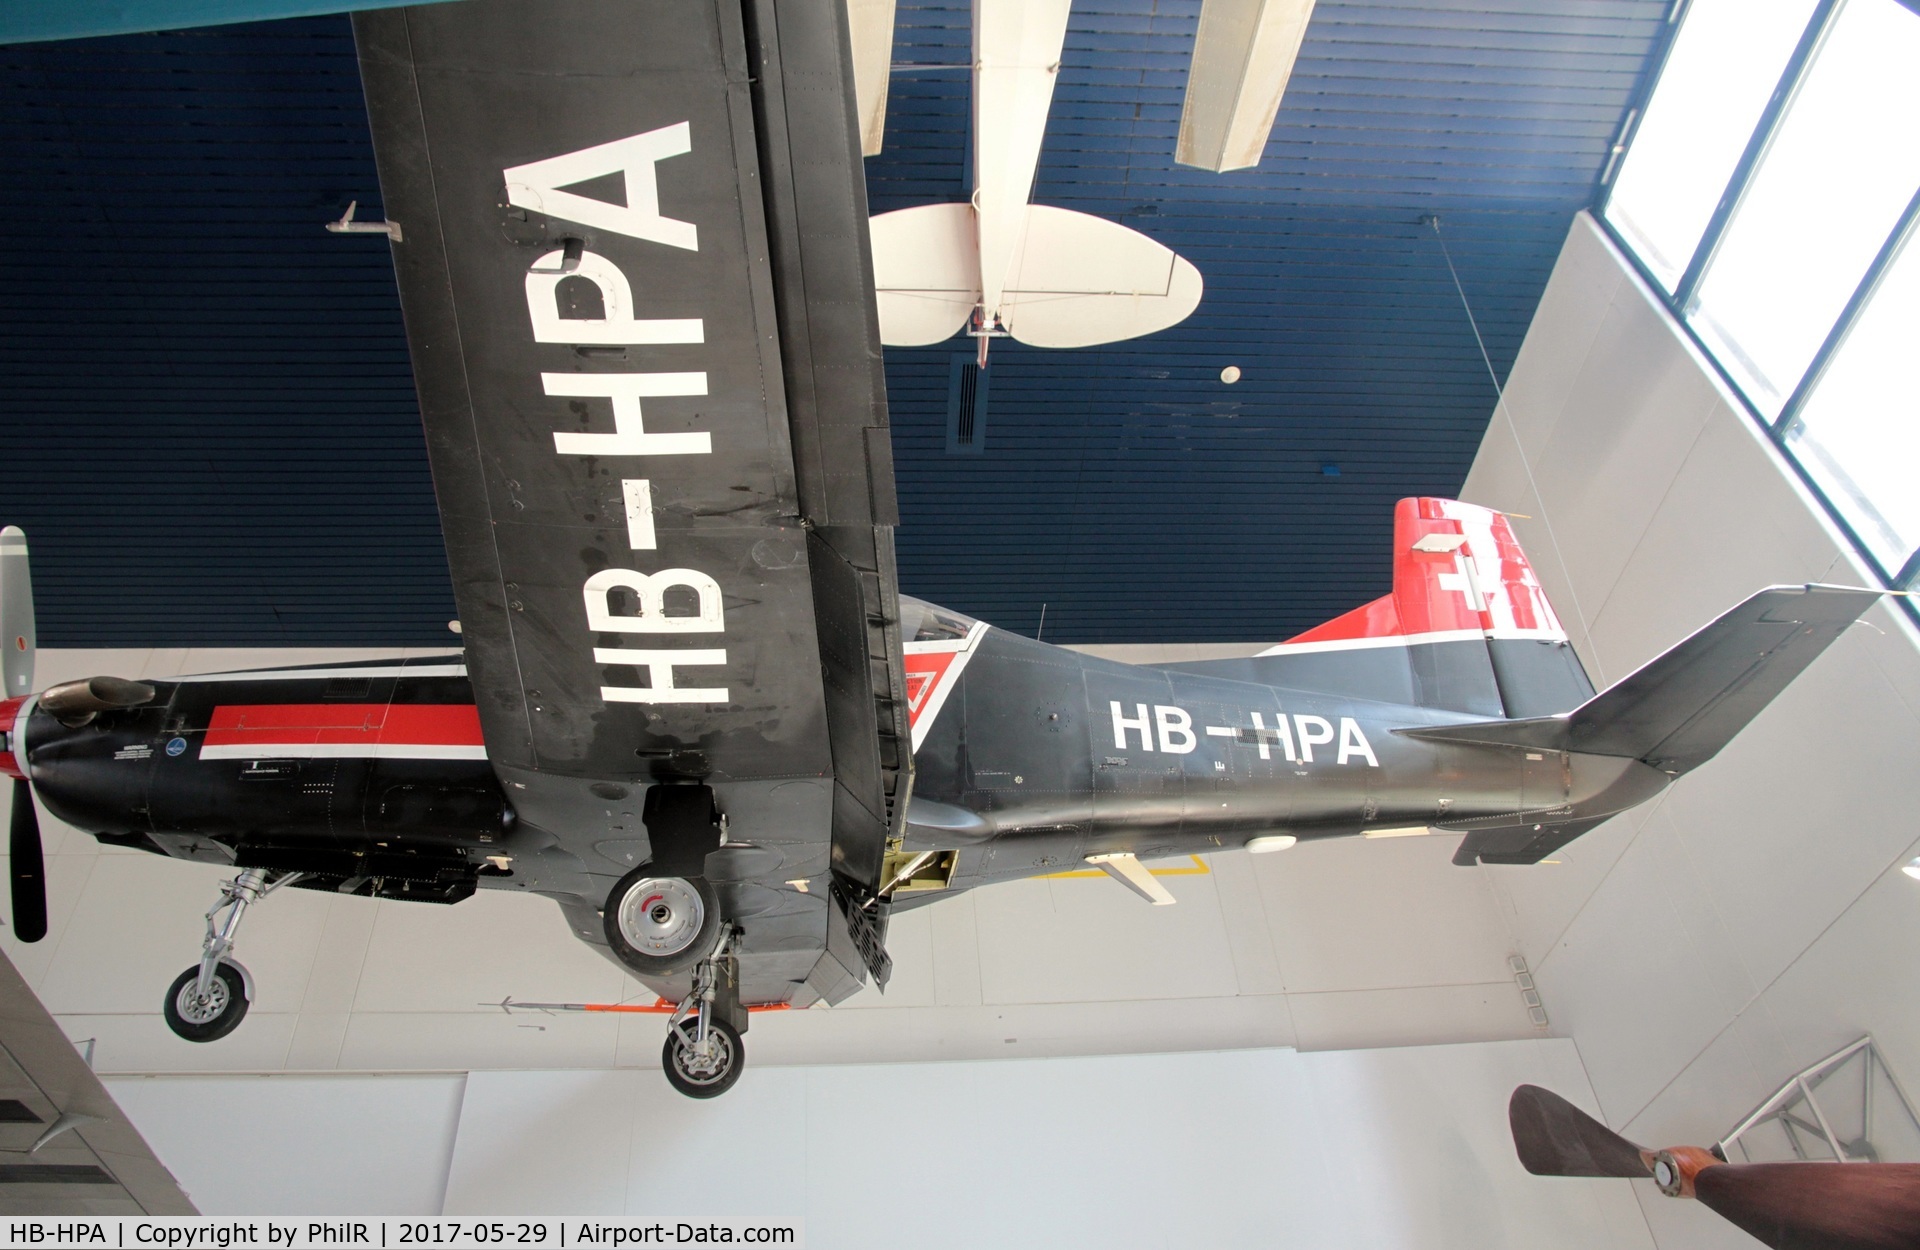 HB-HPA, 1984 Pilatus PC-9 C/N 001, HB-HPA 1984 Ppt Pilatus PC-9 prototype SMoT Lucerne